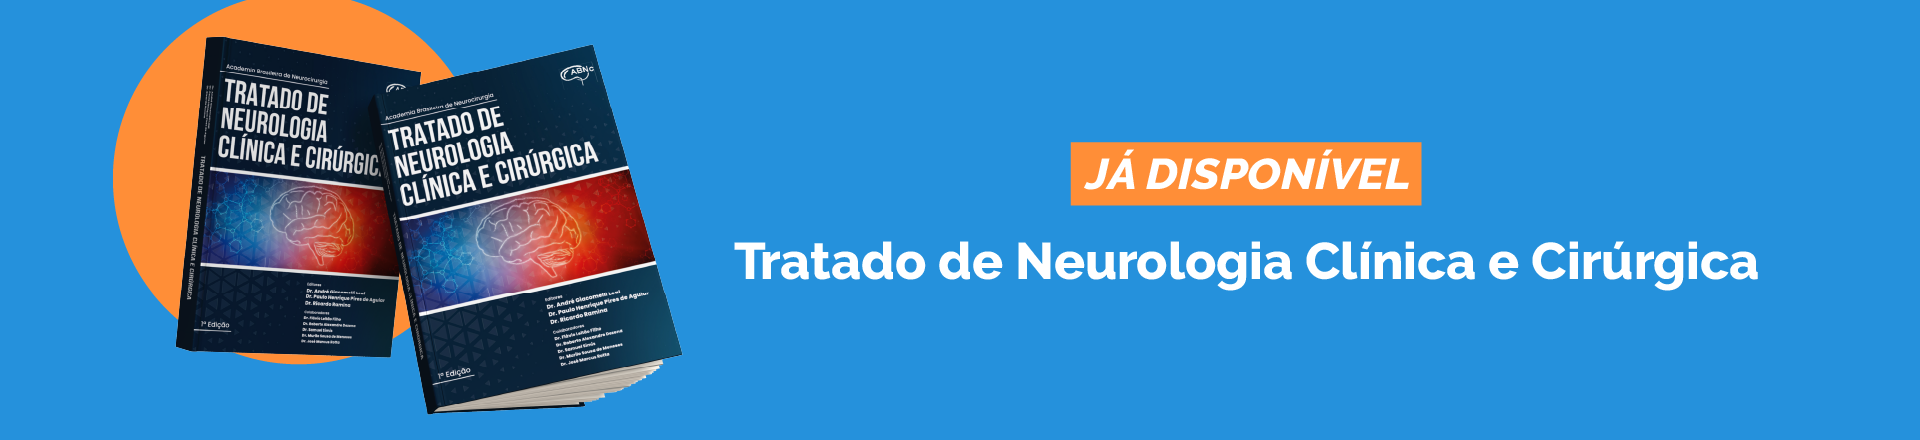 5-tratado_neurologia